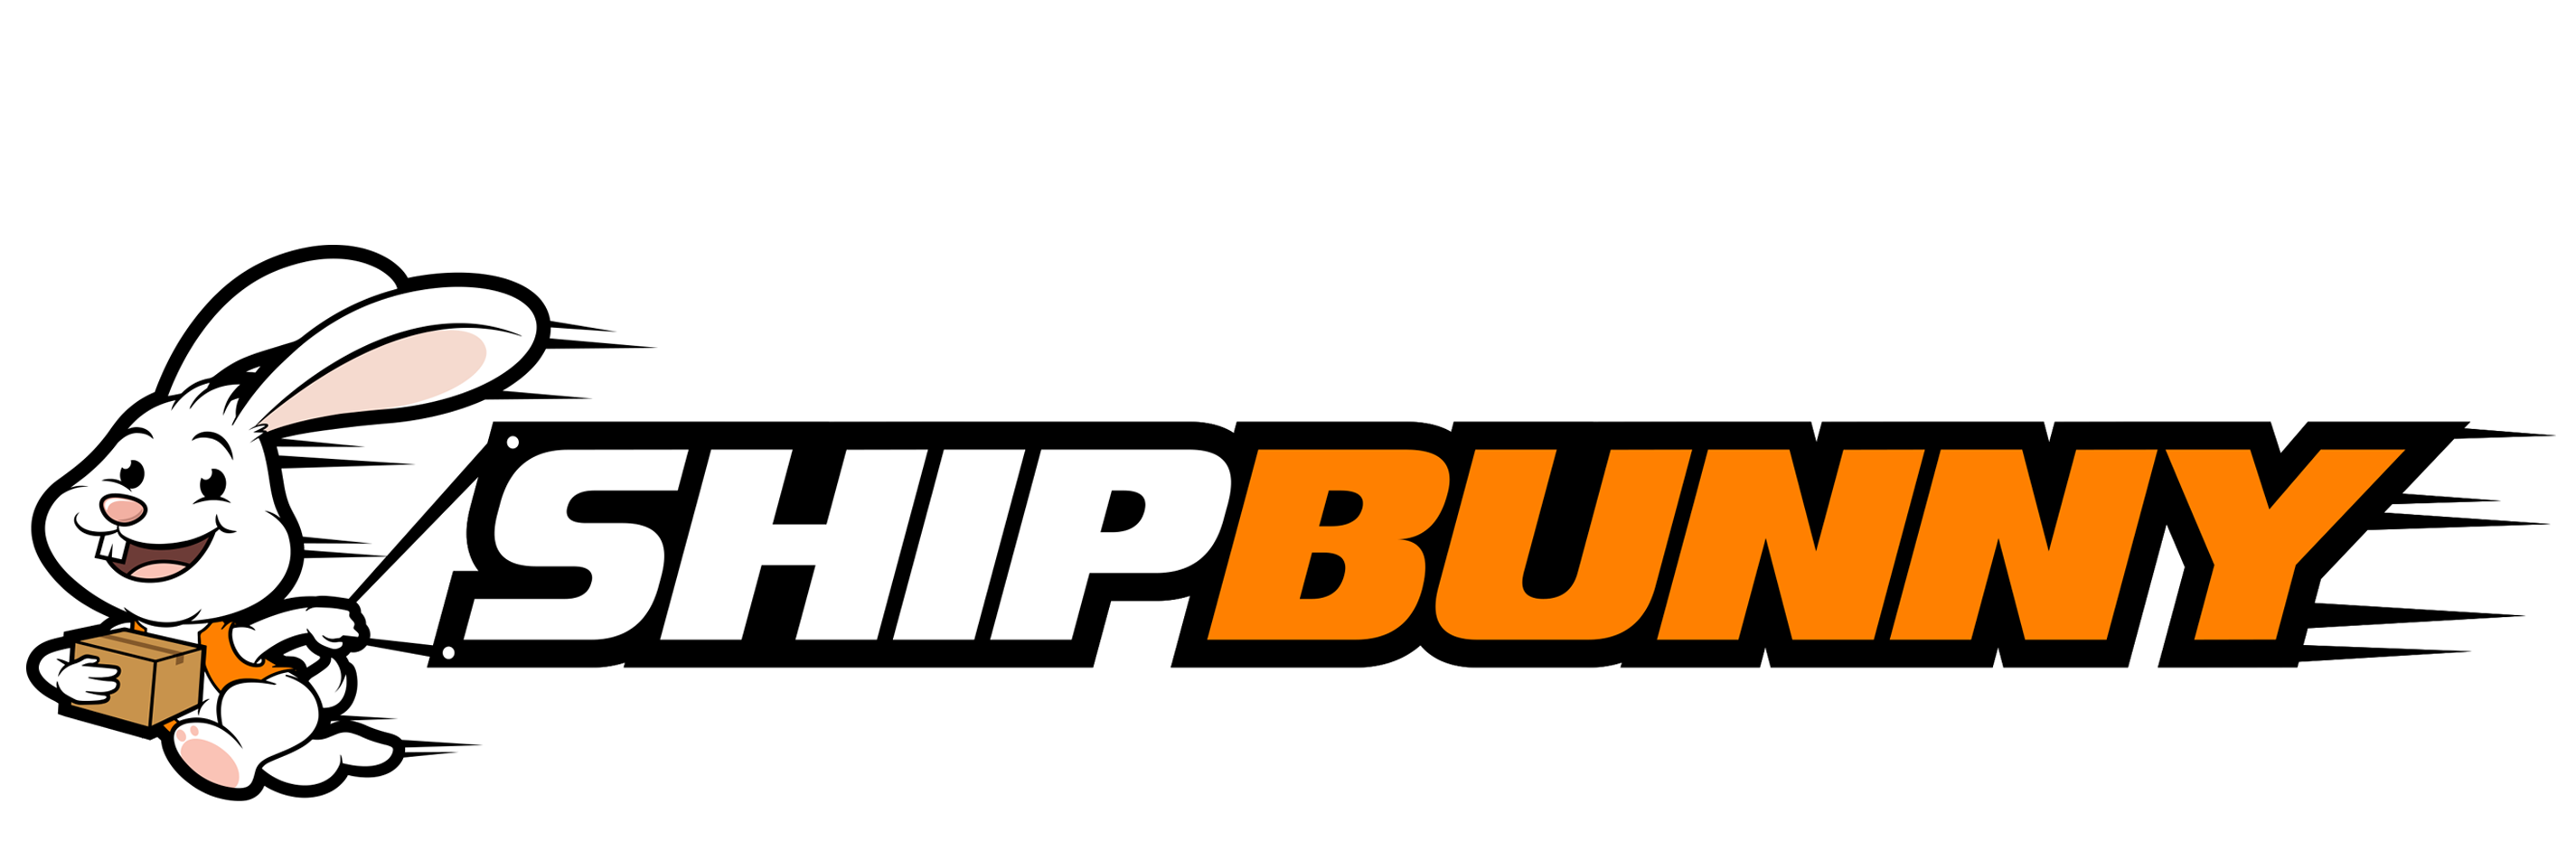 shipbunny.com